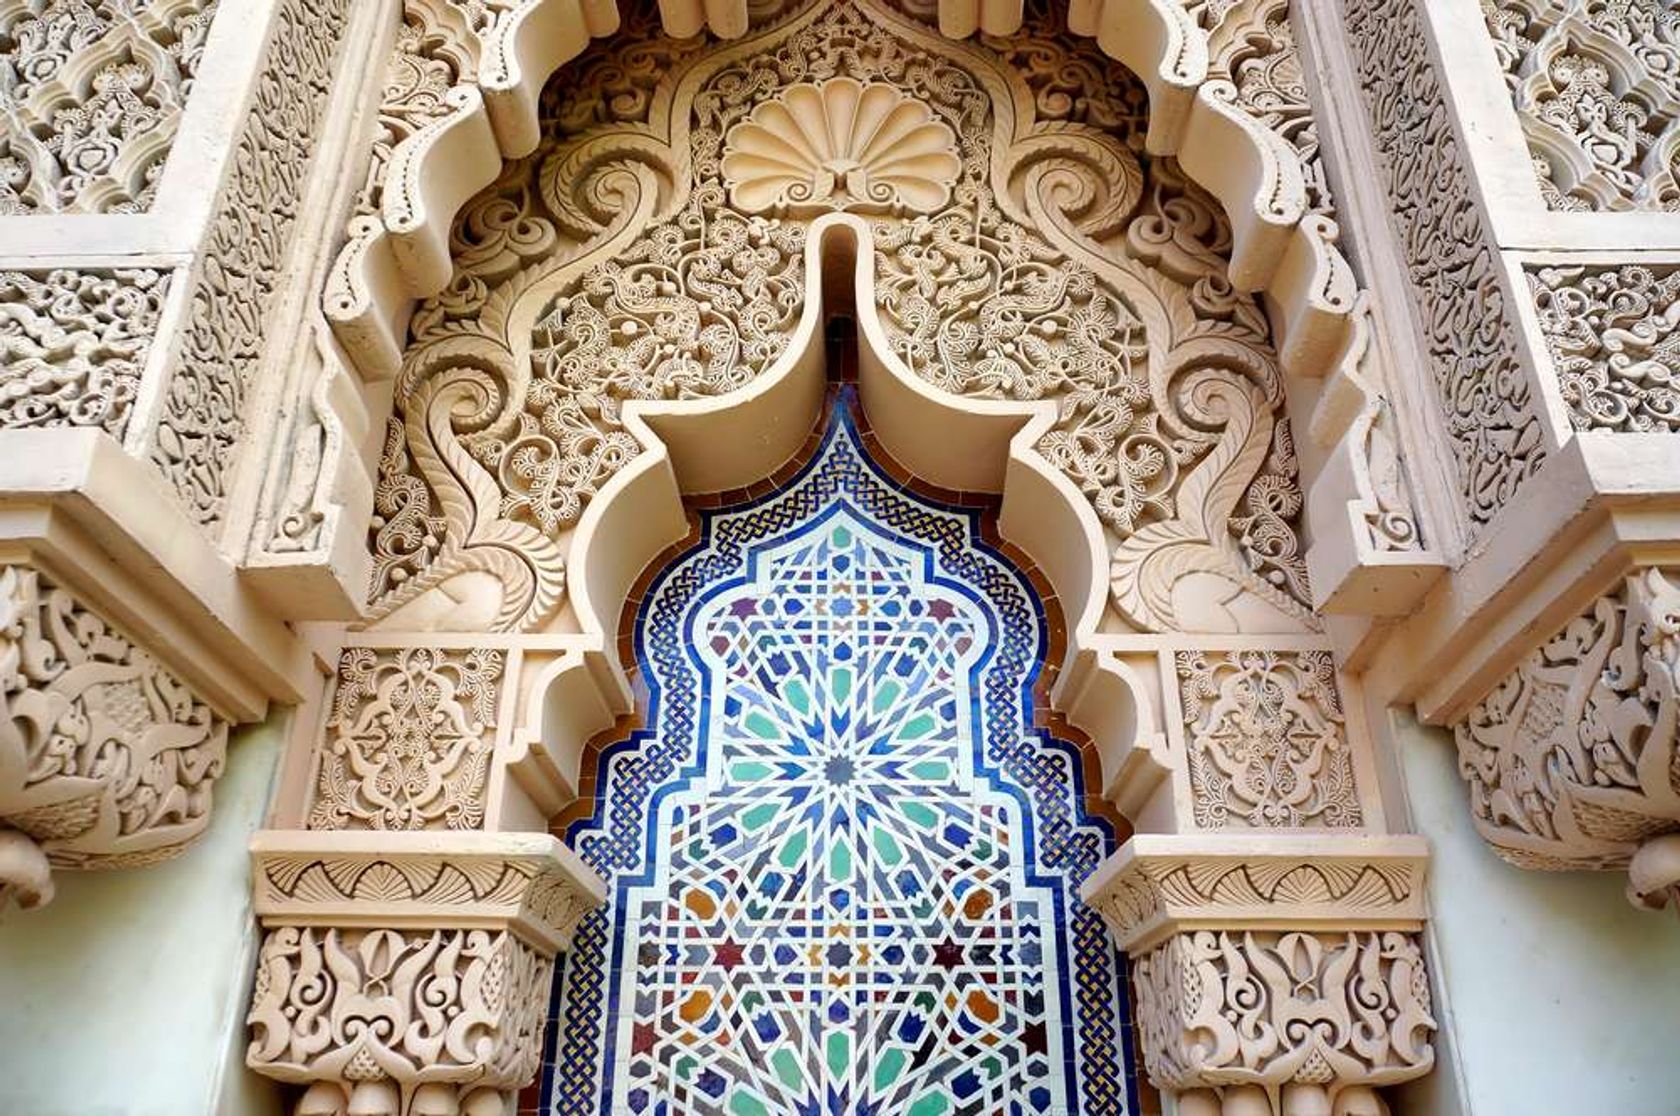 Marokko architecture traditional design